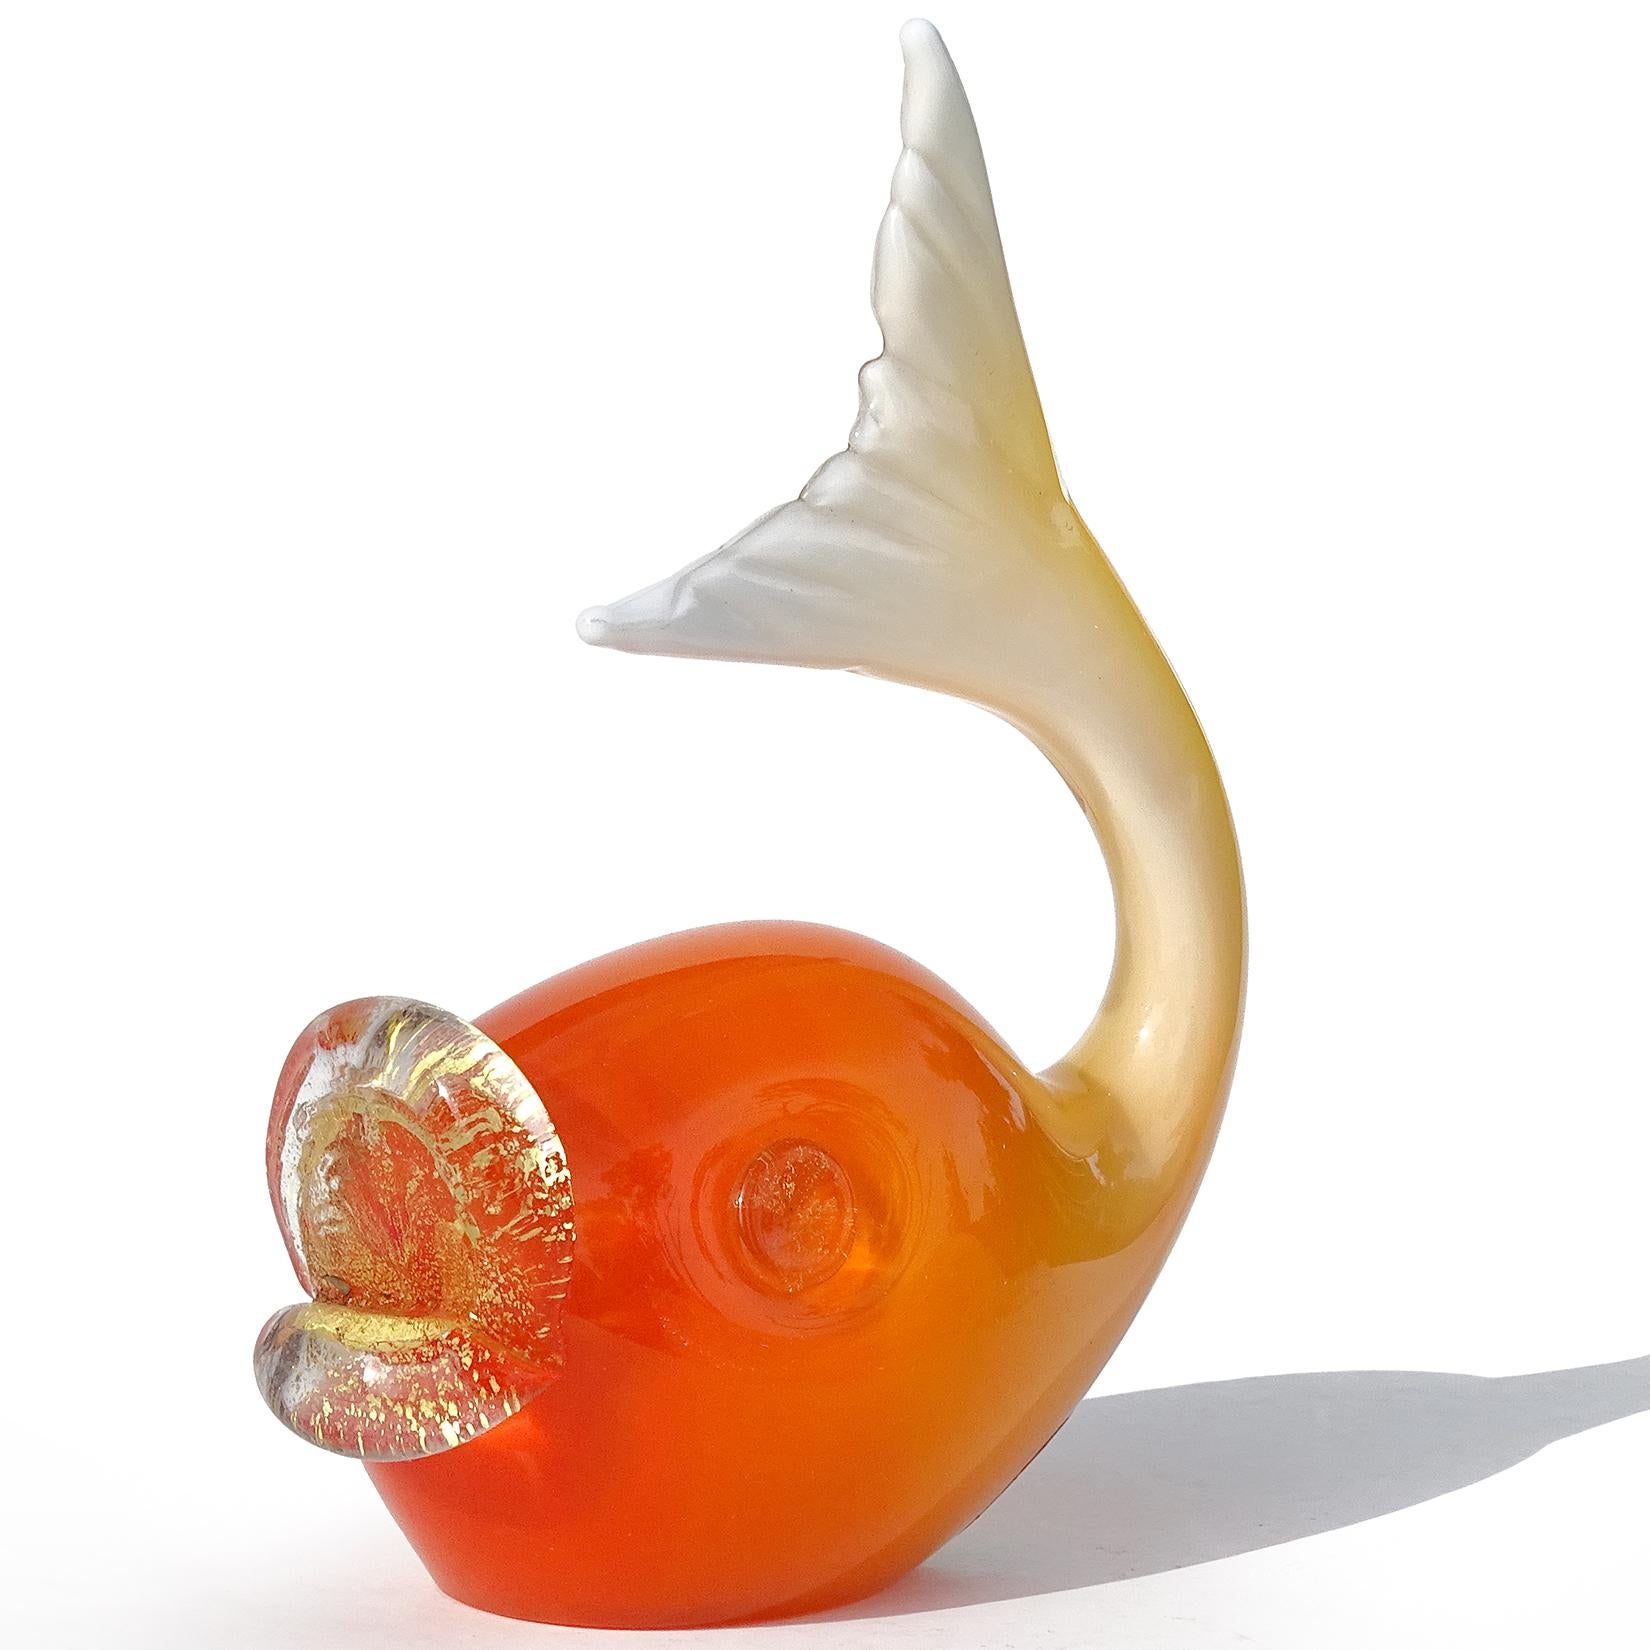 Magnifique figurine de poisson en verre d'art italien soufflé à la main de Murano, de couleur orange foncé à blanc, avec un effet d'ombre. Documenté à la société Salviati, avec l'étiquette originale 